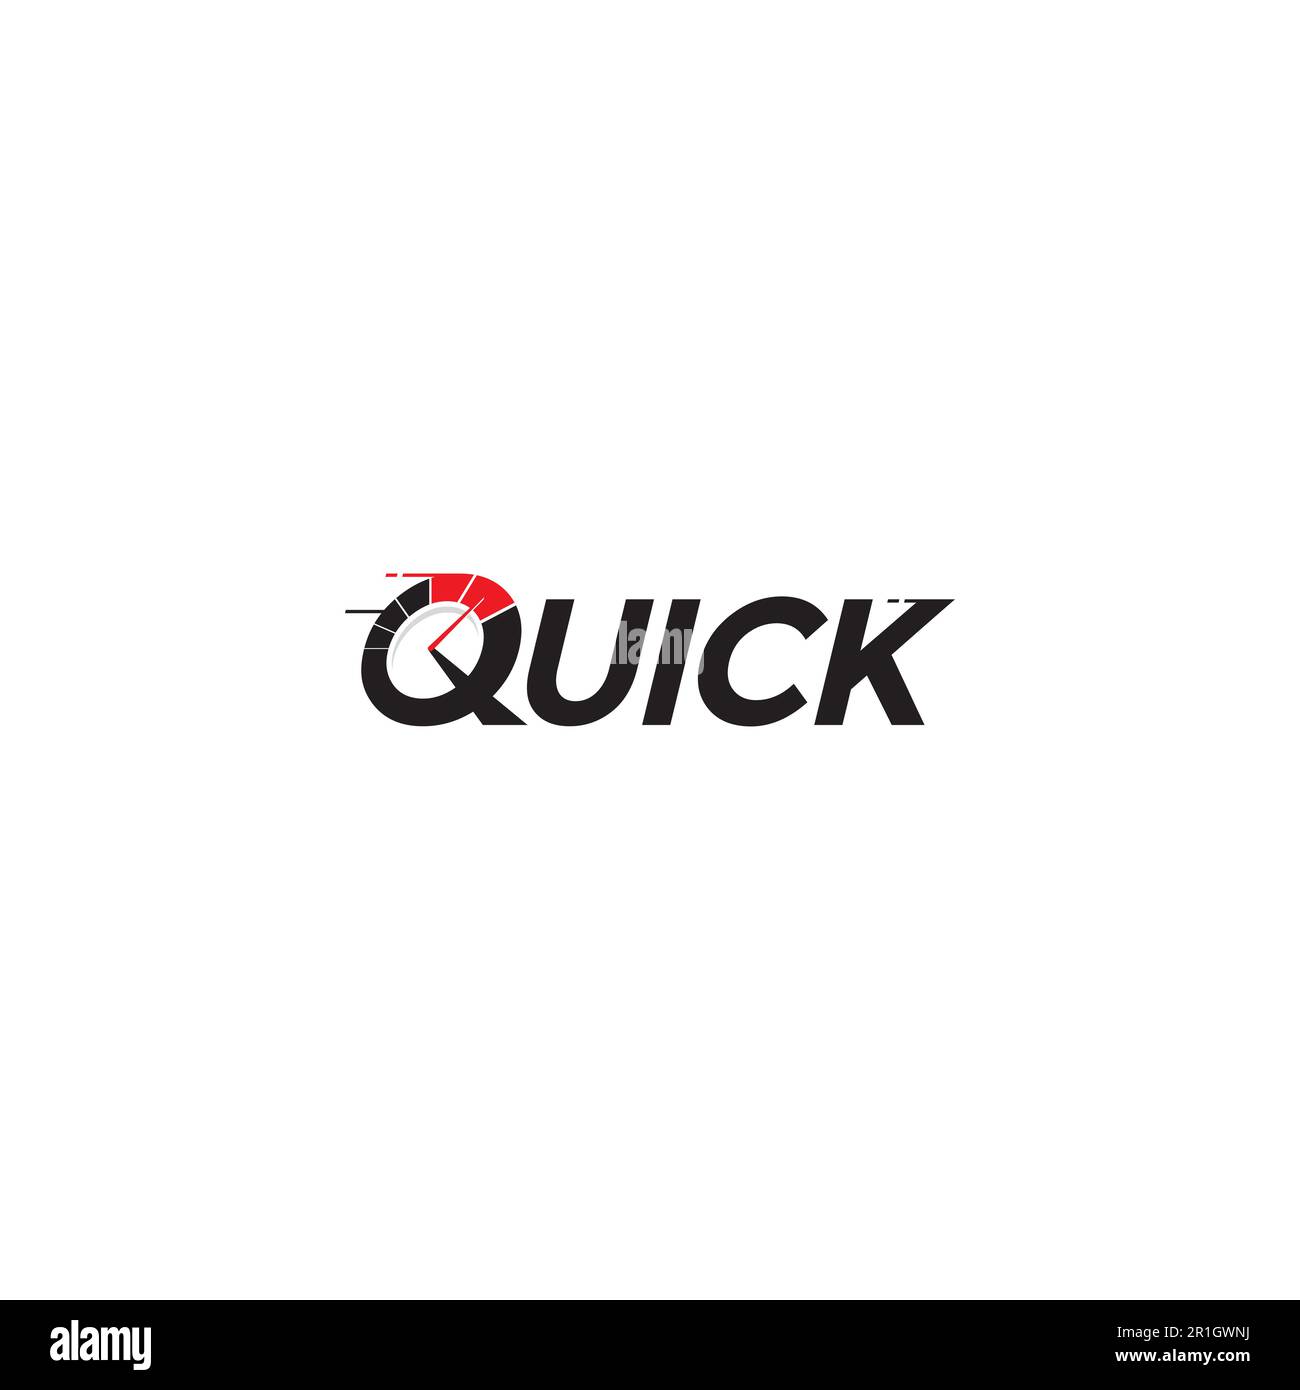 Quick logo or wordmark design Stock Vector